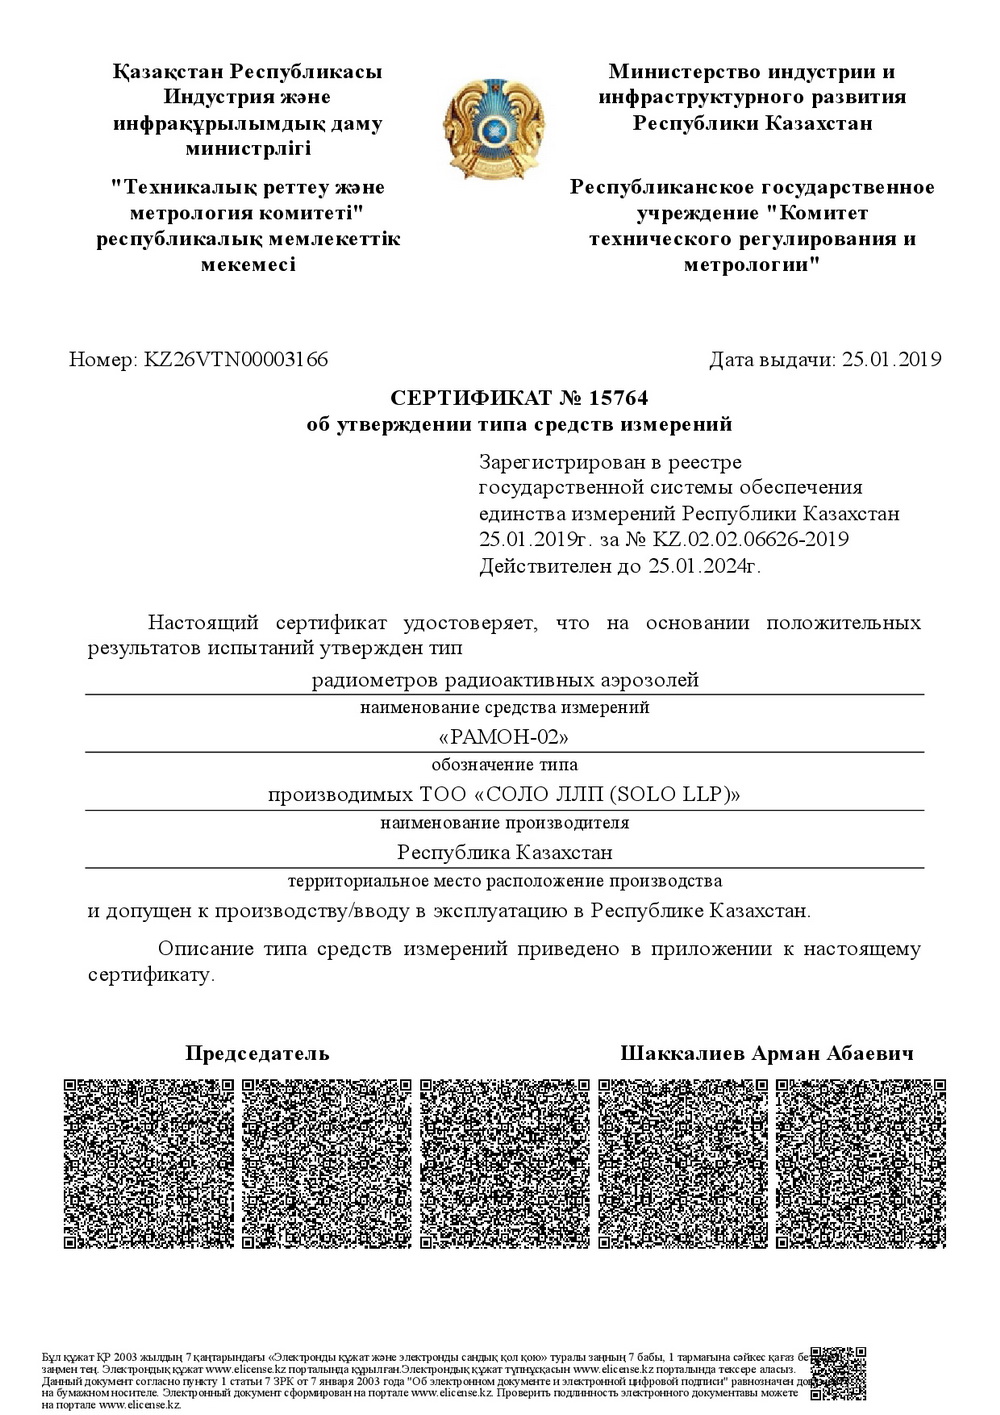 Сертификат об утверждении типа РАМОН-02